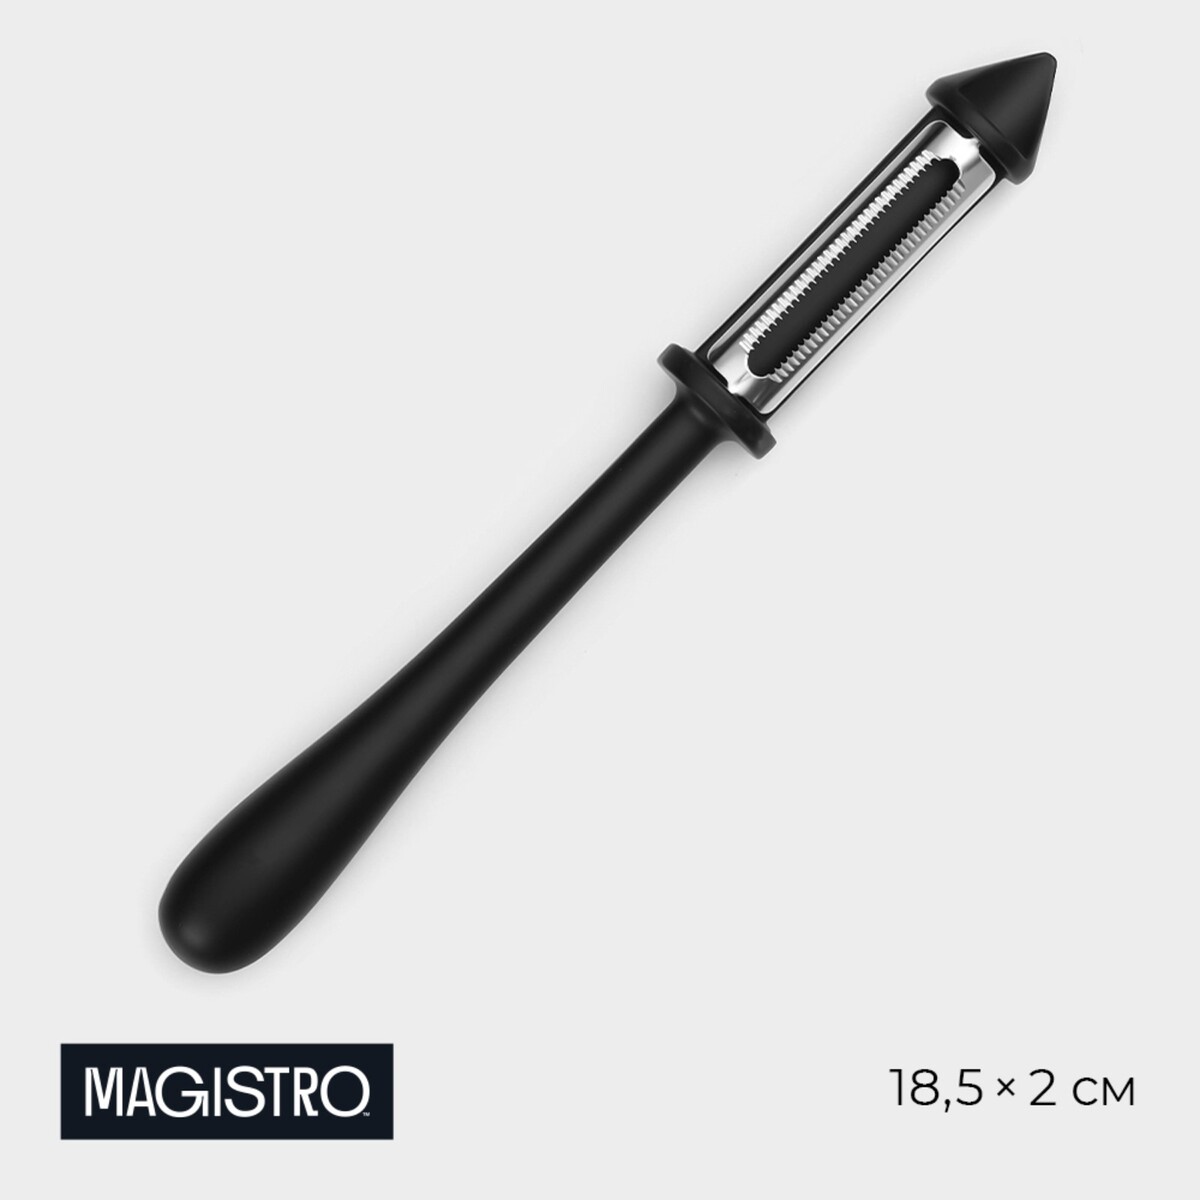 Овощечистка magistro vantablack, 18,5×2 см, многофункциональная, цвет черный многофункциональная силовая станция protrain mt7000